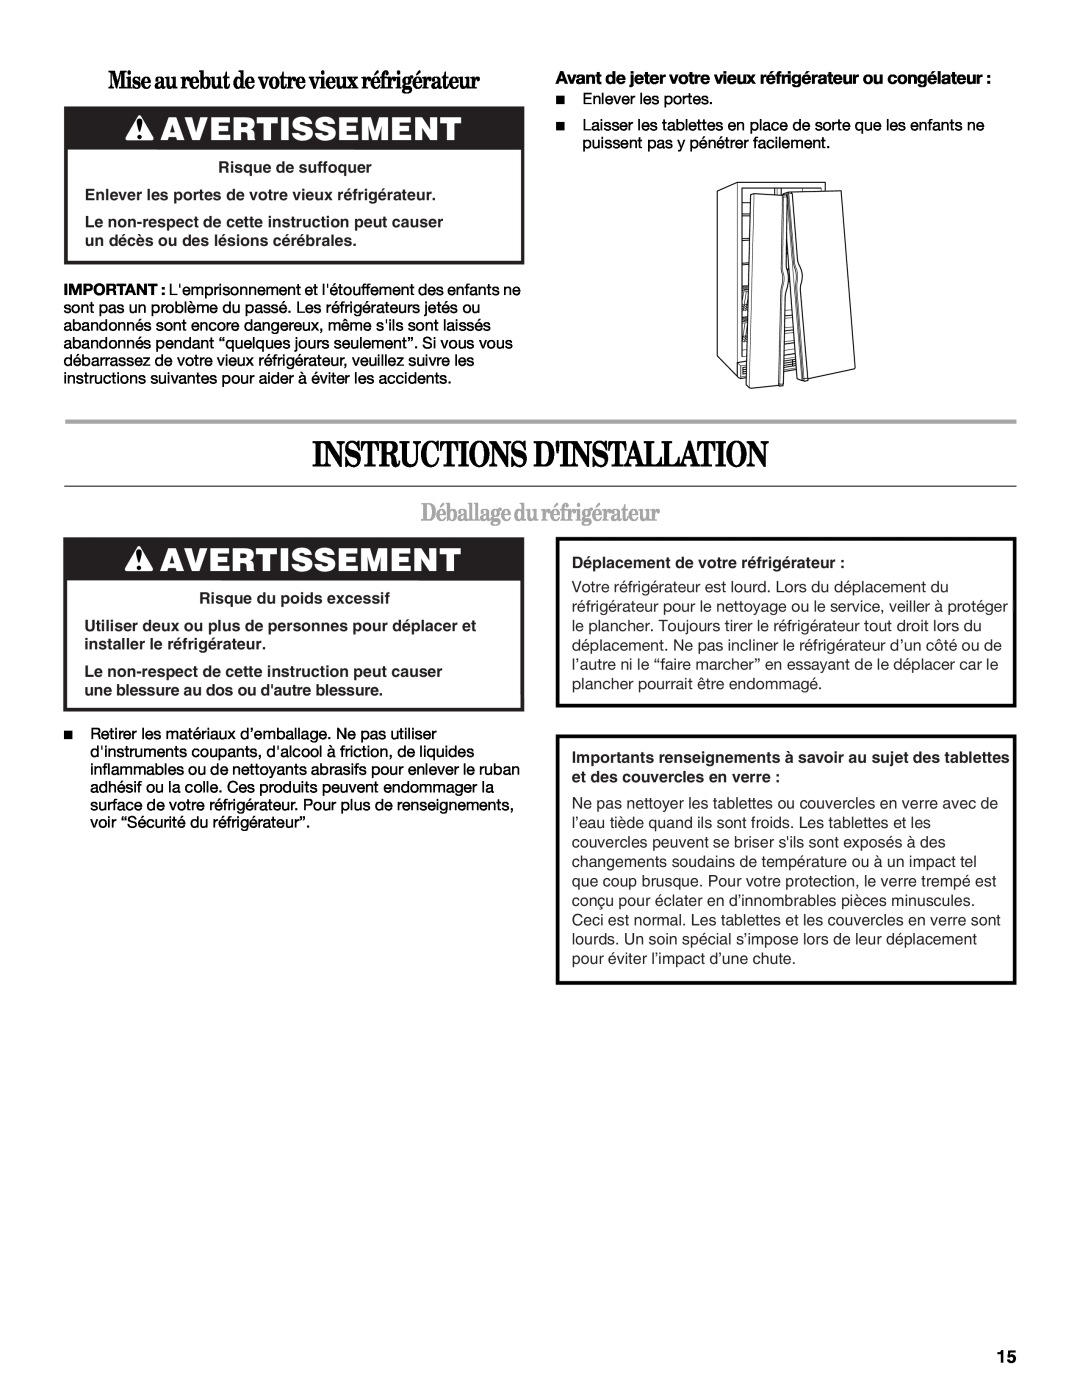 Whirlpool ED5FHAXV Instructions Dinstallation, Avertissement, Mise au rebutde votre vieux réfrigérateur 